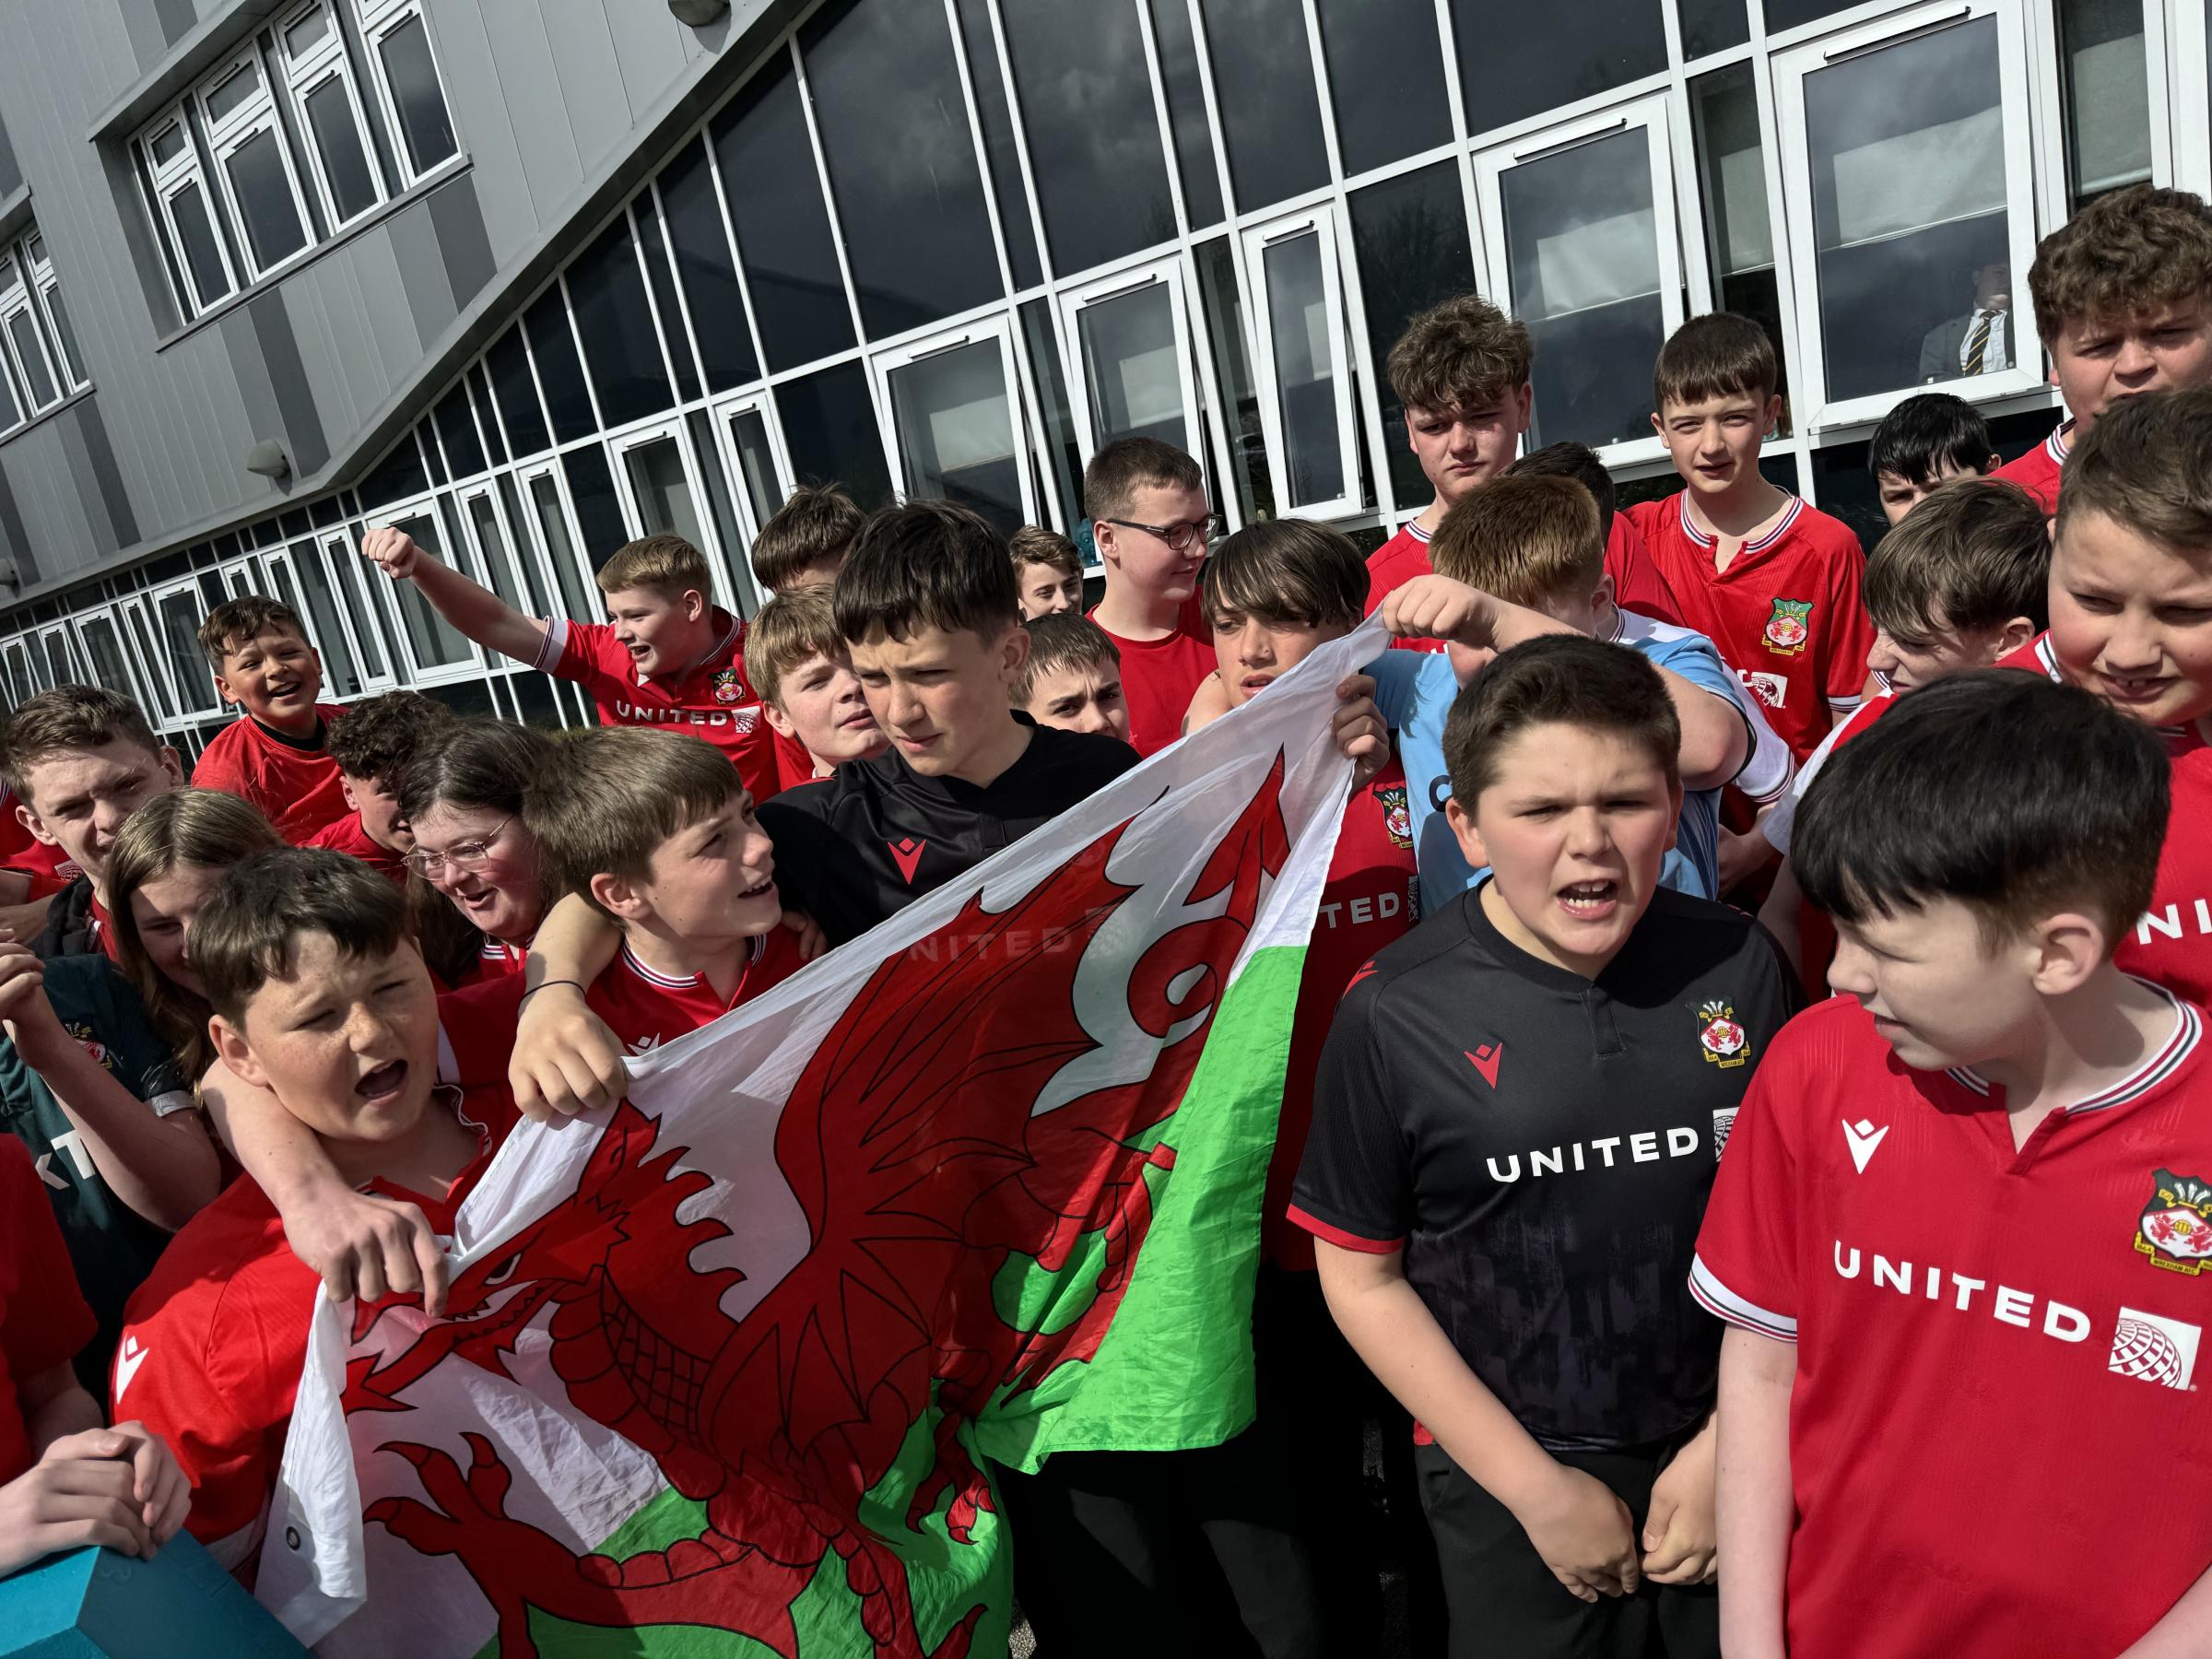 Seeing red - Ysgol Bryn Alyn celebrate Wrexham AFCs league promotion.